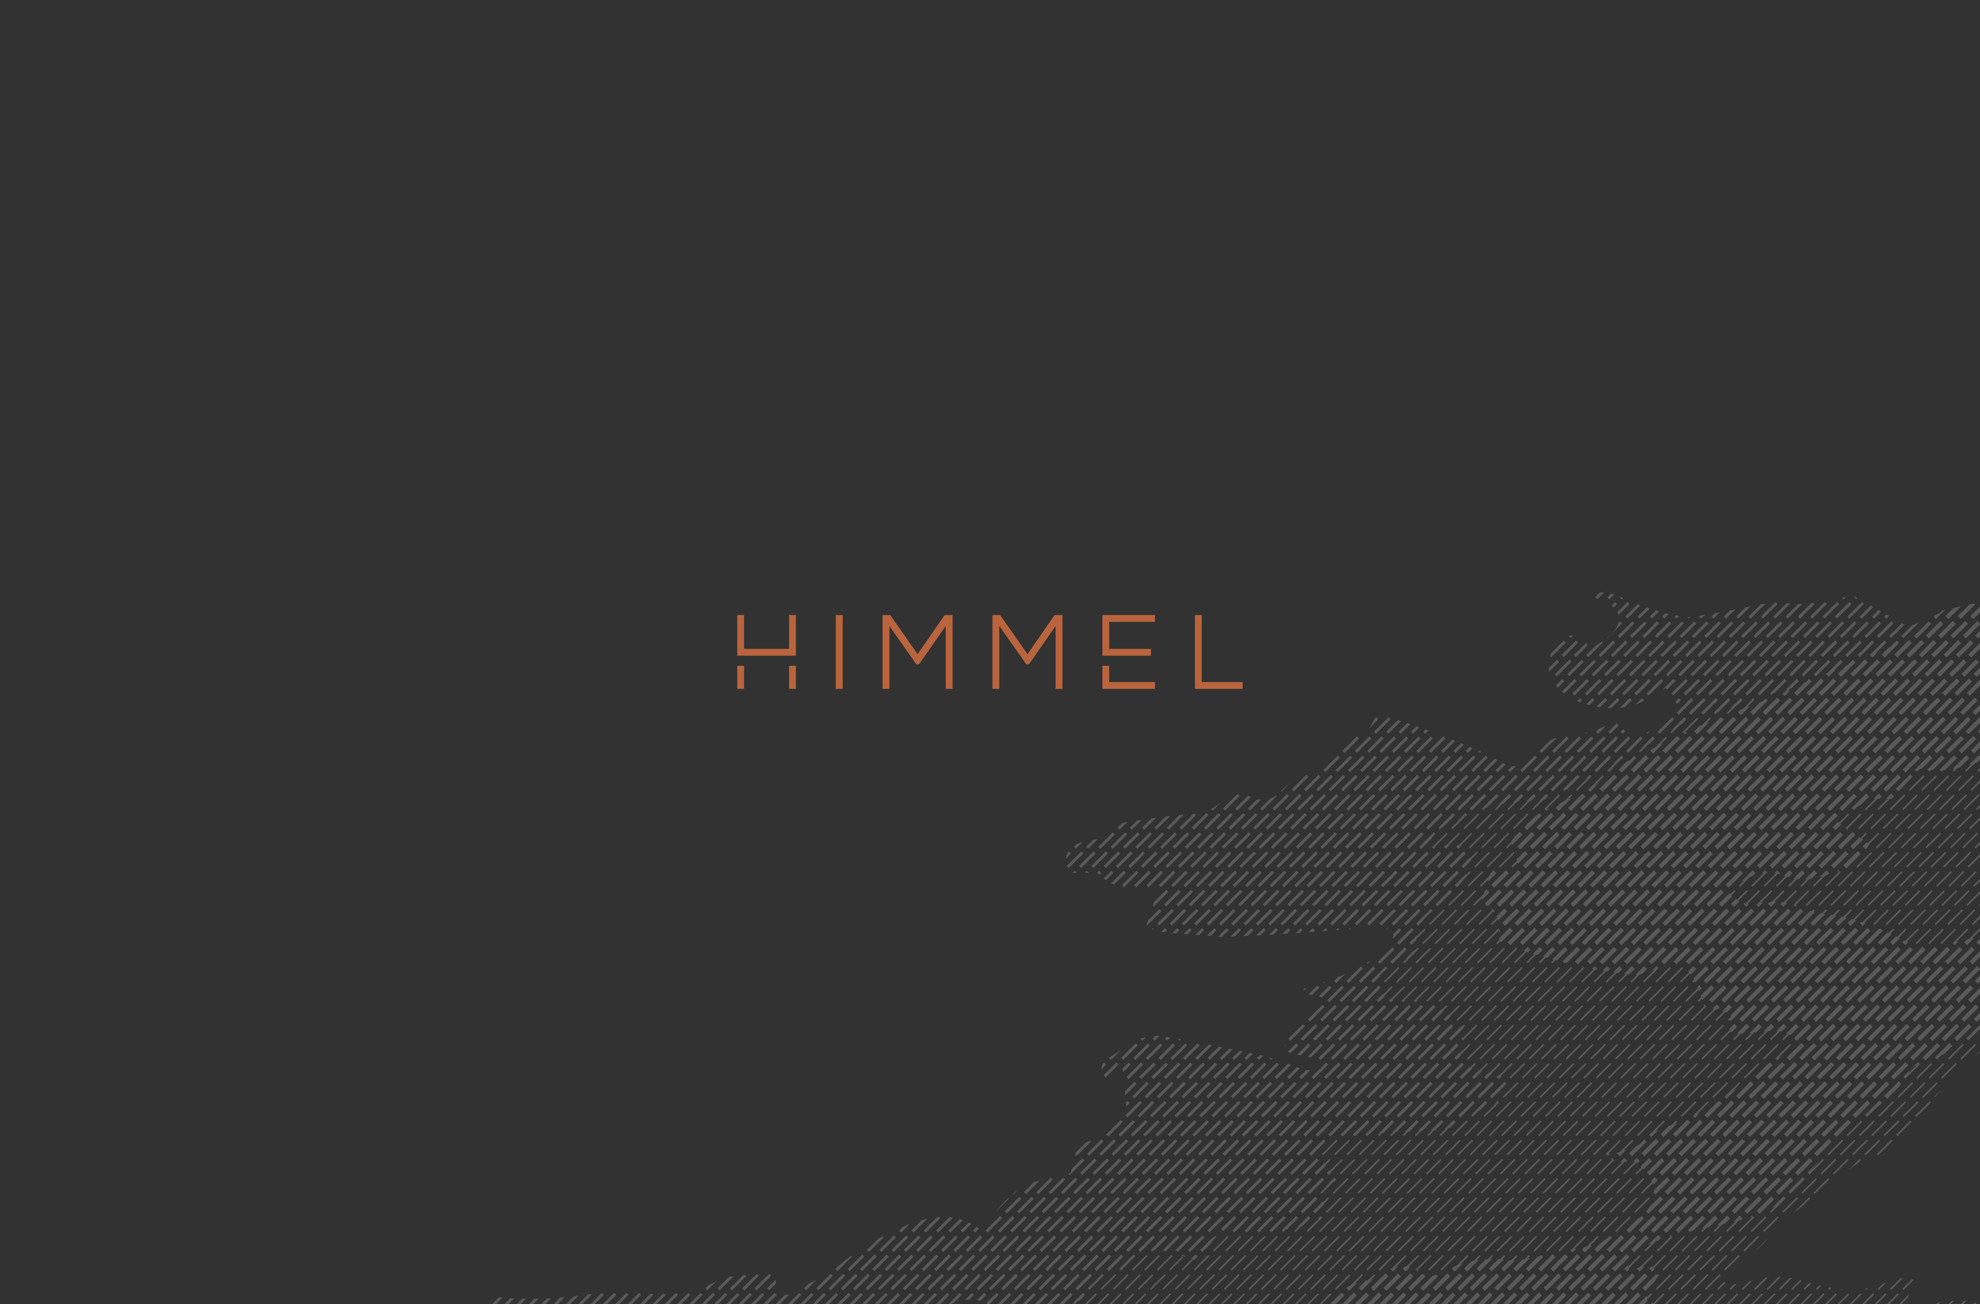 Himmel - Brand